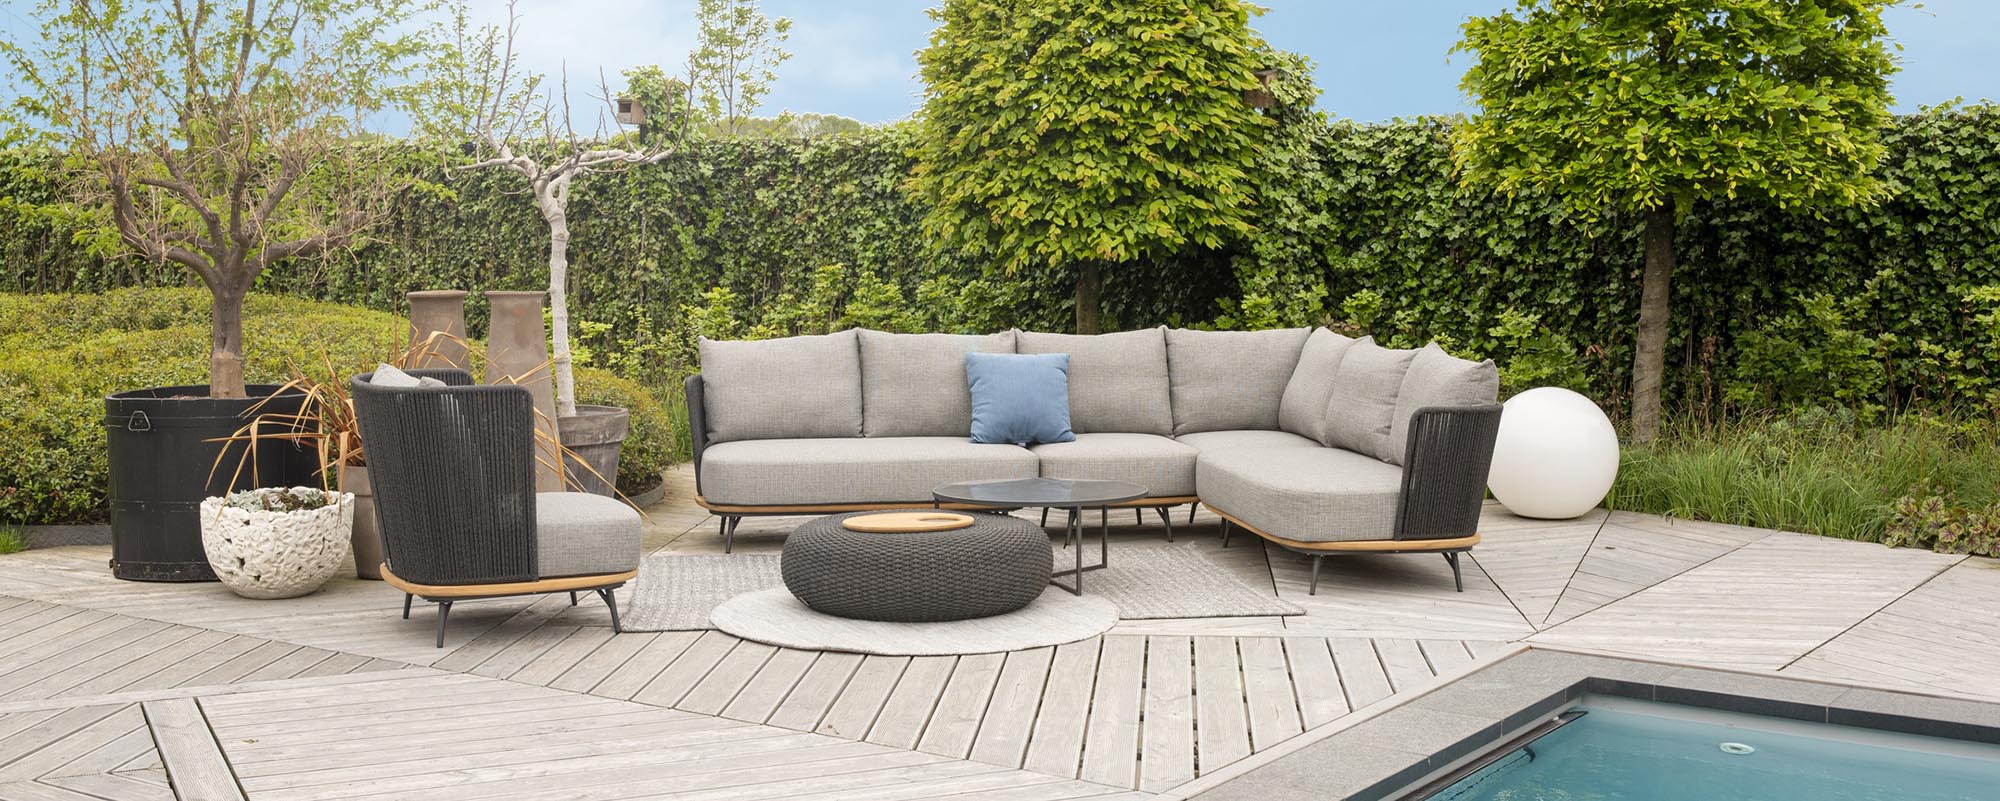 Gartenmöbel | Positano Lounge Sofa-Module Superschöne Garten Lounge